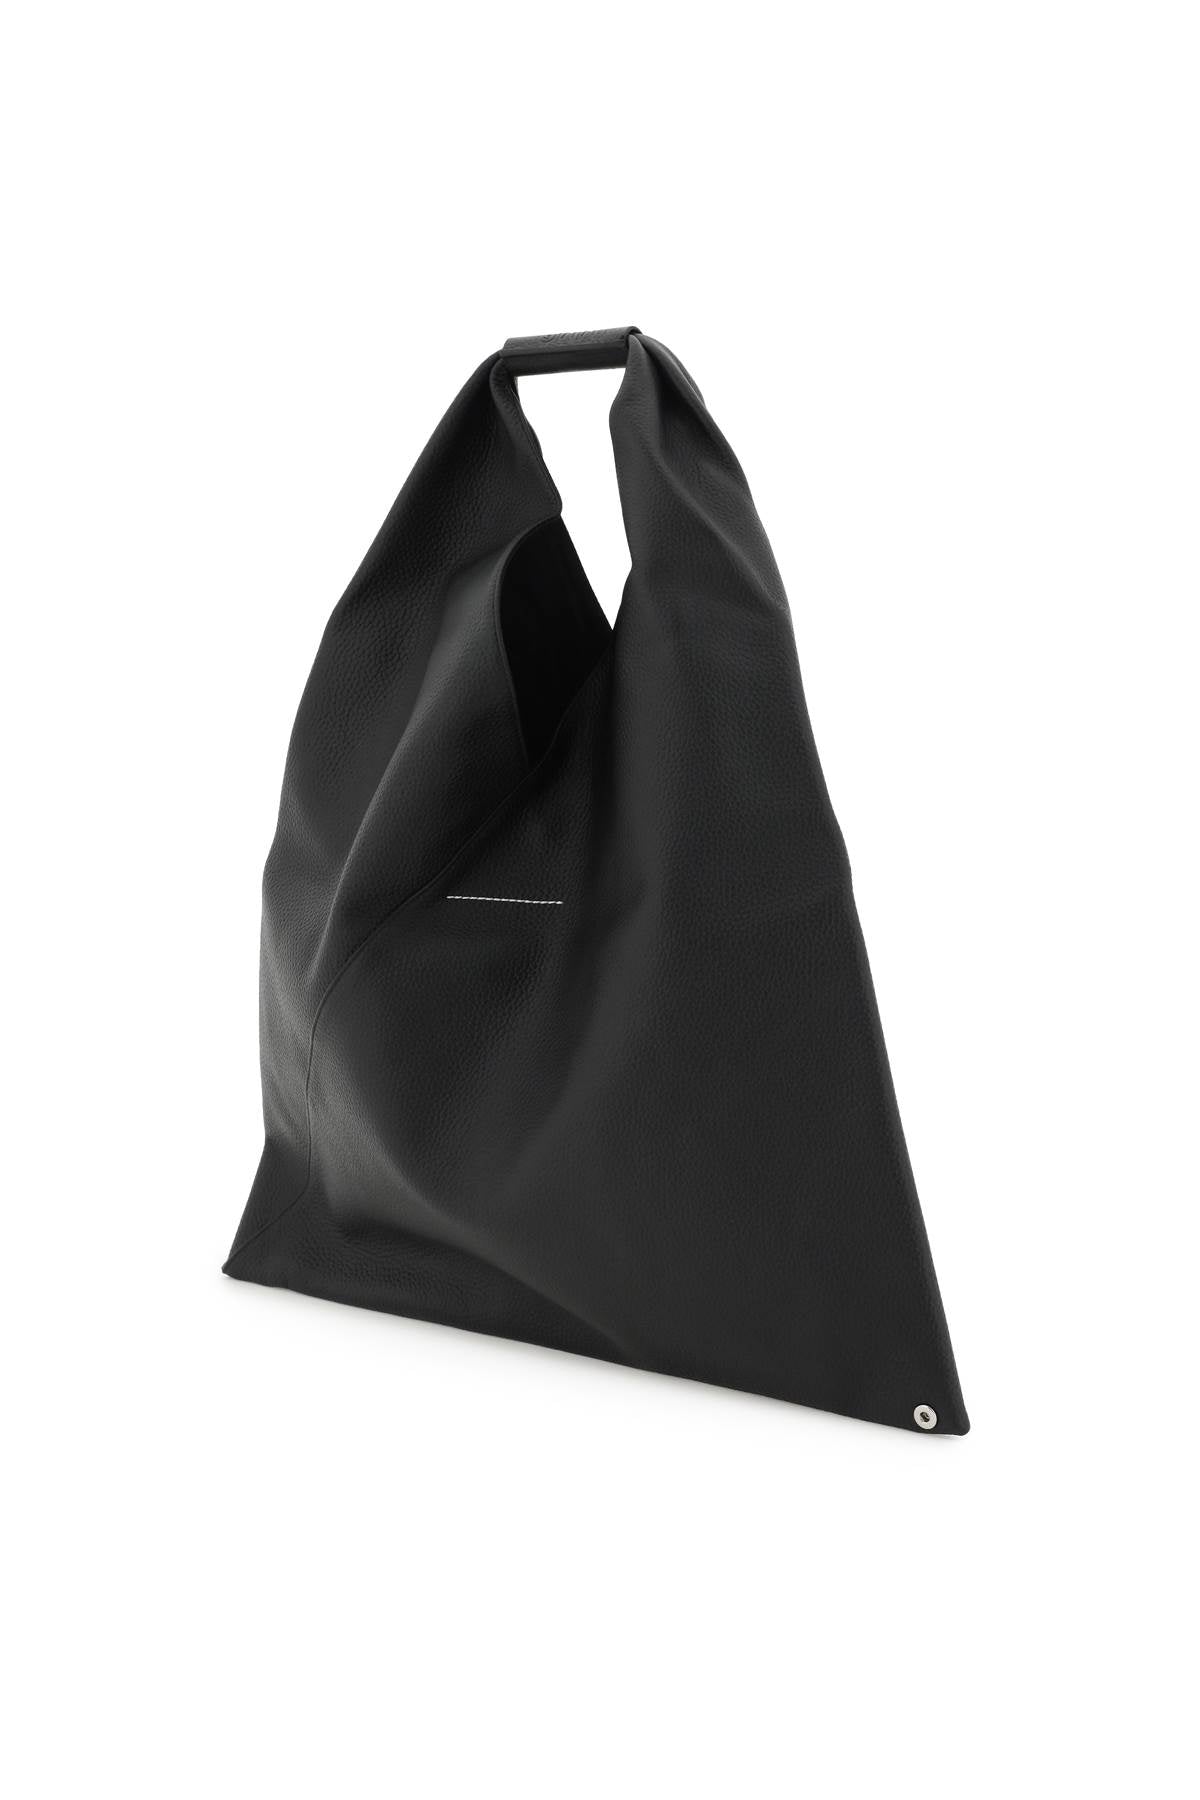 MM6 MAISON MARGIELA Japanese Handbag in Black – Iconic Leather Bag for Women